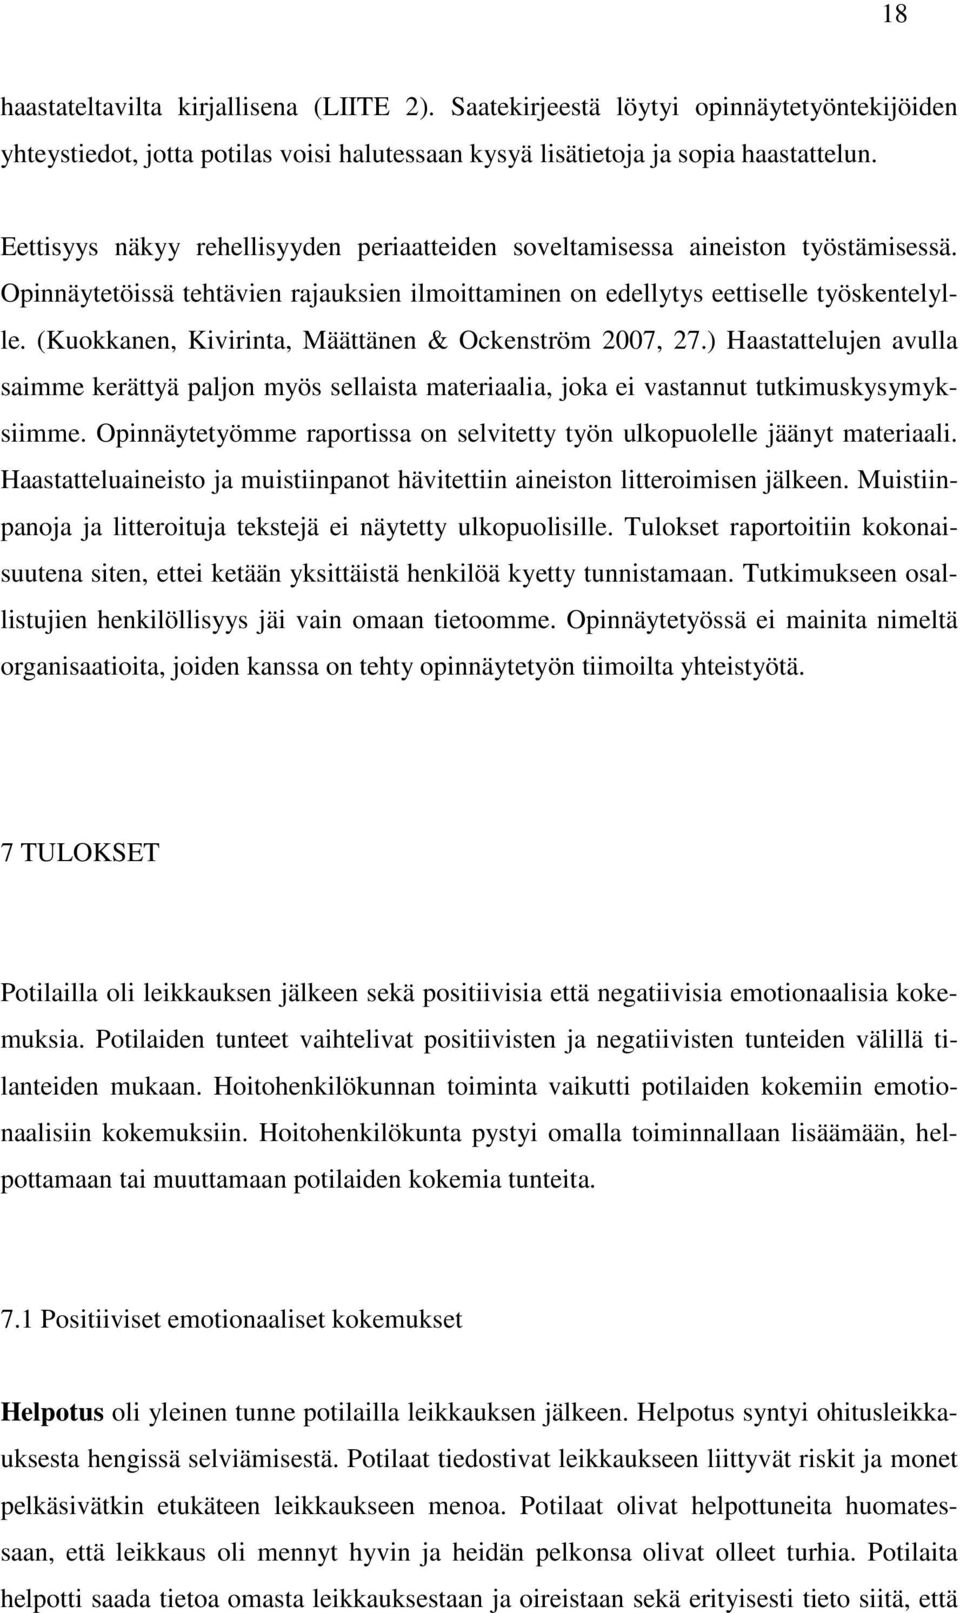 (Kuokkanen, Kivirinta, Määttänen & Ockenström 2007, 27.) Haastattelujen avulla saimme kerättyä paljon myös sellaista materiaalia, joka ei vastannut tutkimuskysymyksiimme.